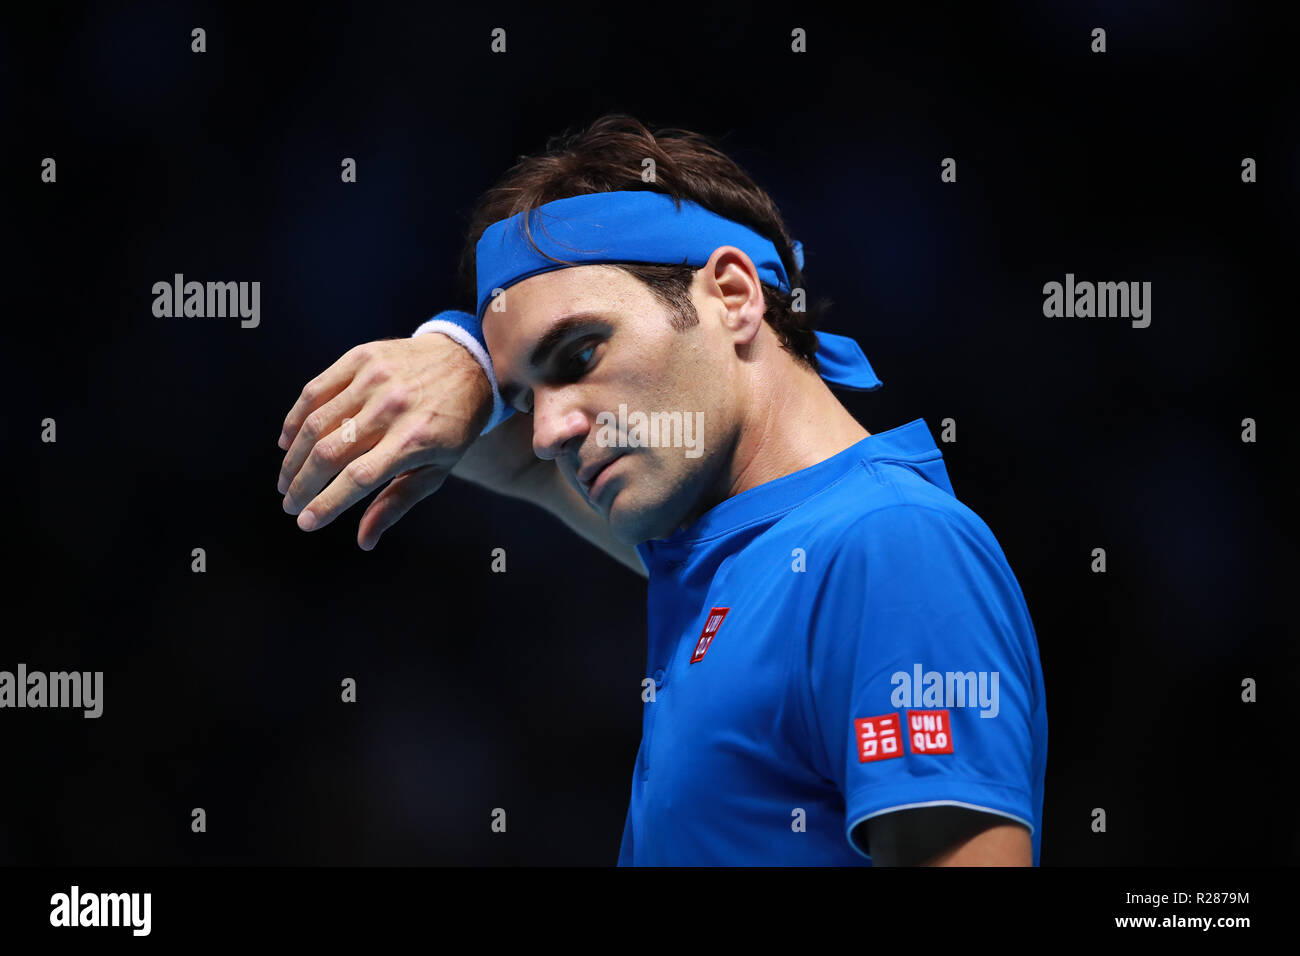 17 novembre 2018, O2 Arena, London, England ; Nitto ATP Tennis Finale, Roger Federer (SUI) à déçu dans son match de demi-finale contre Alexander Zverev (GER) Banque D'Images